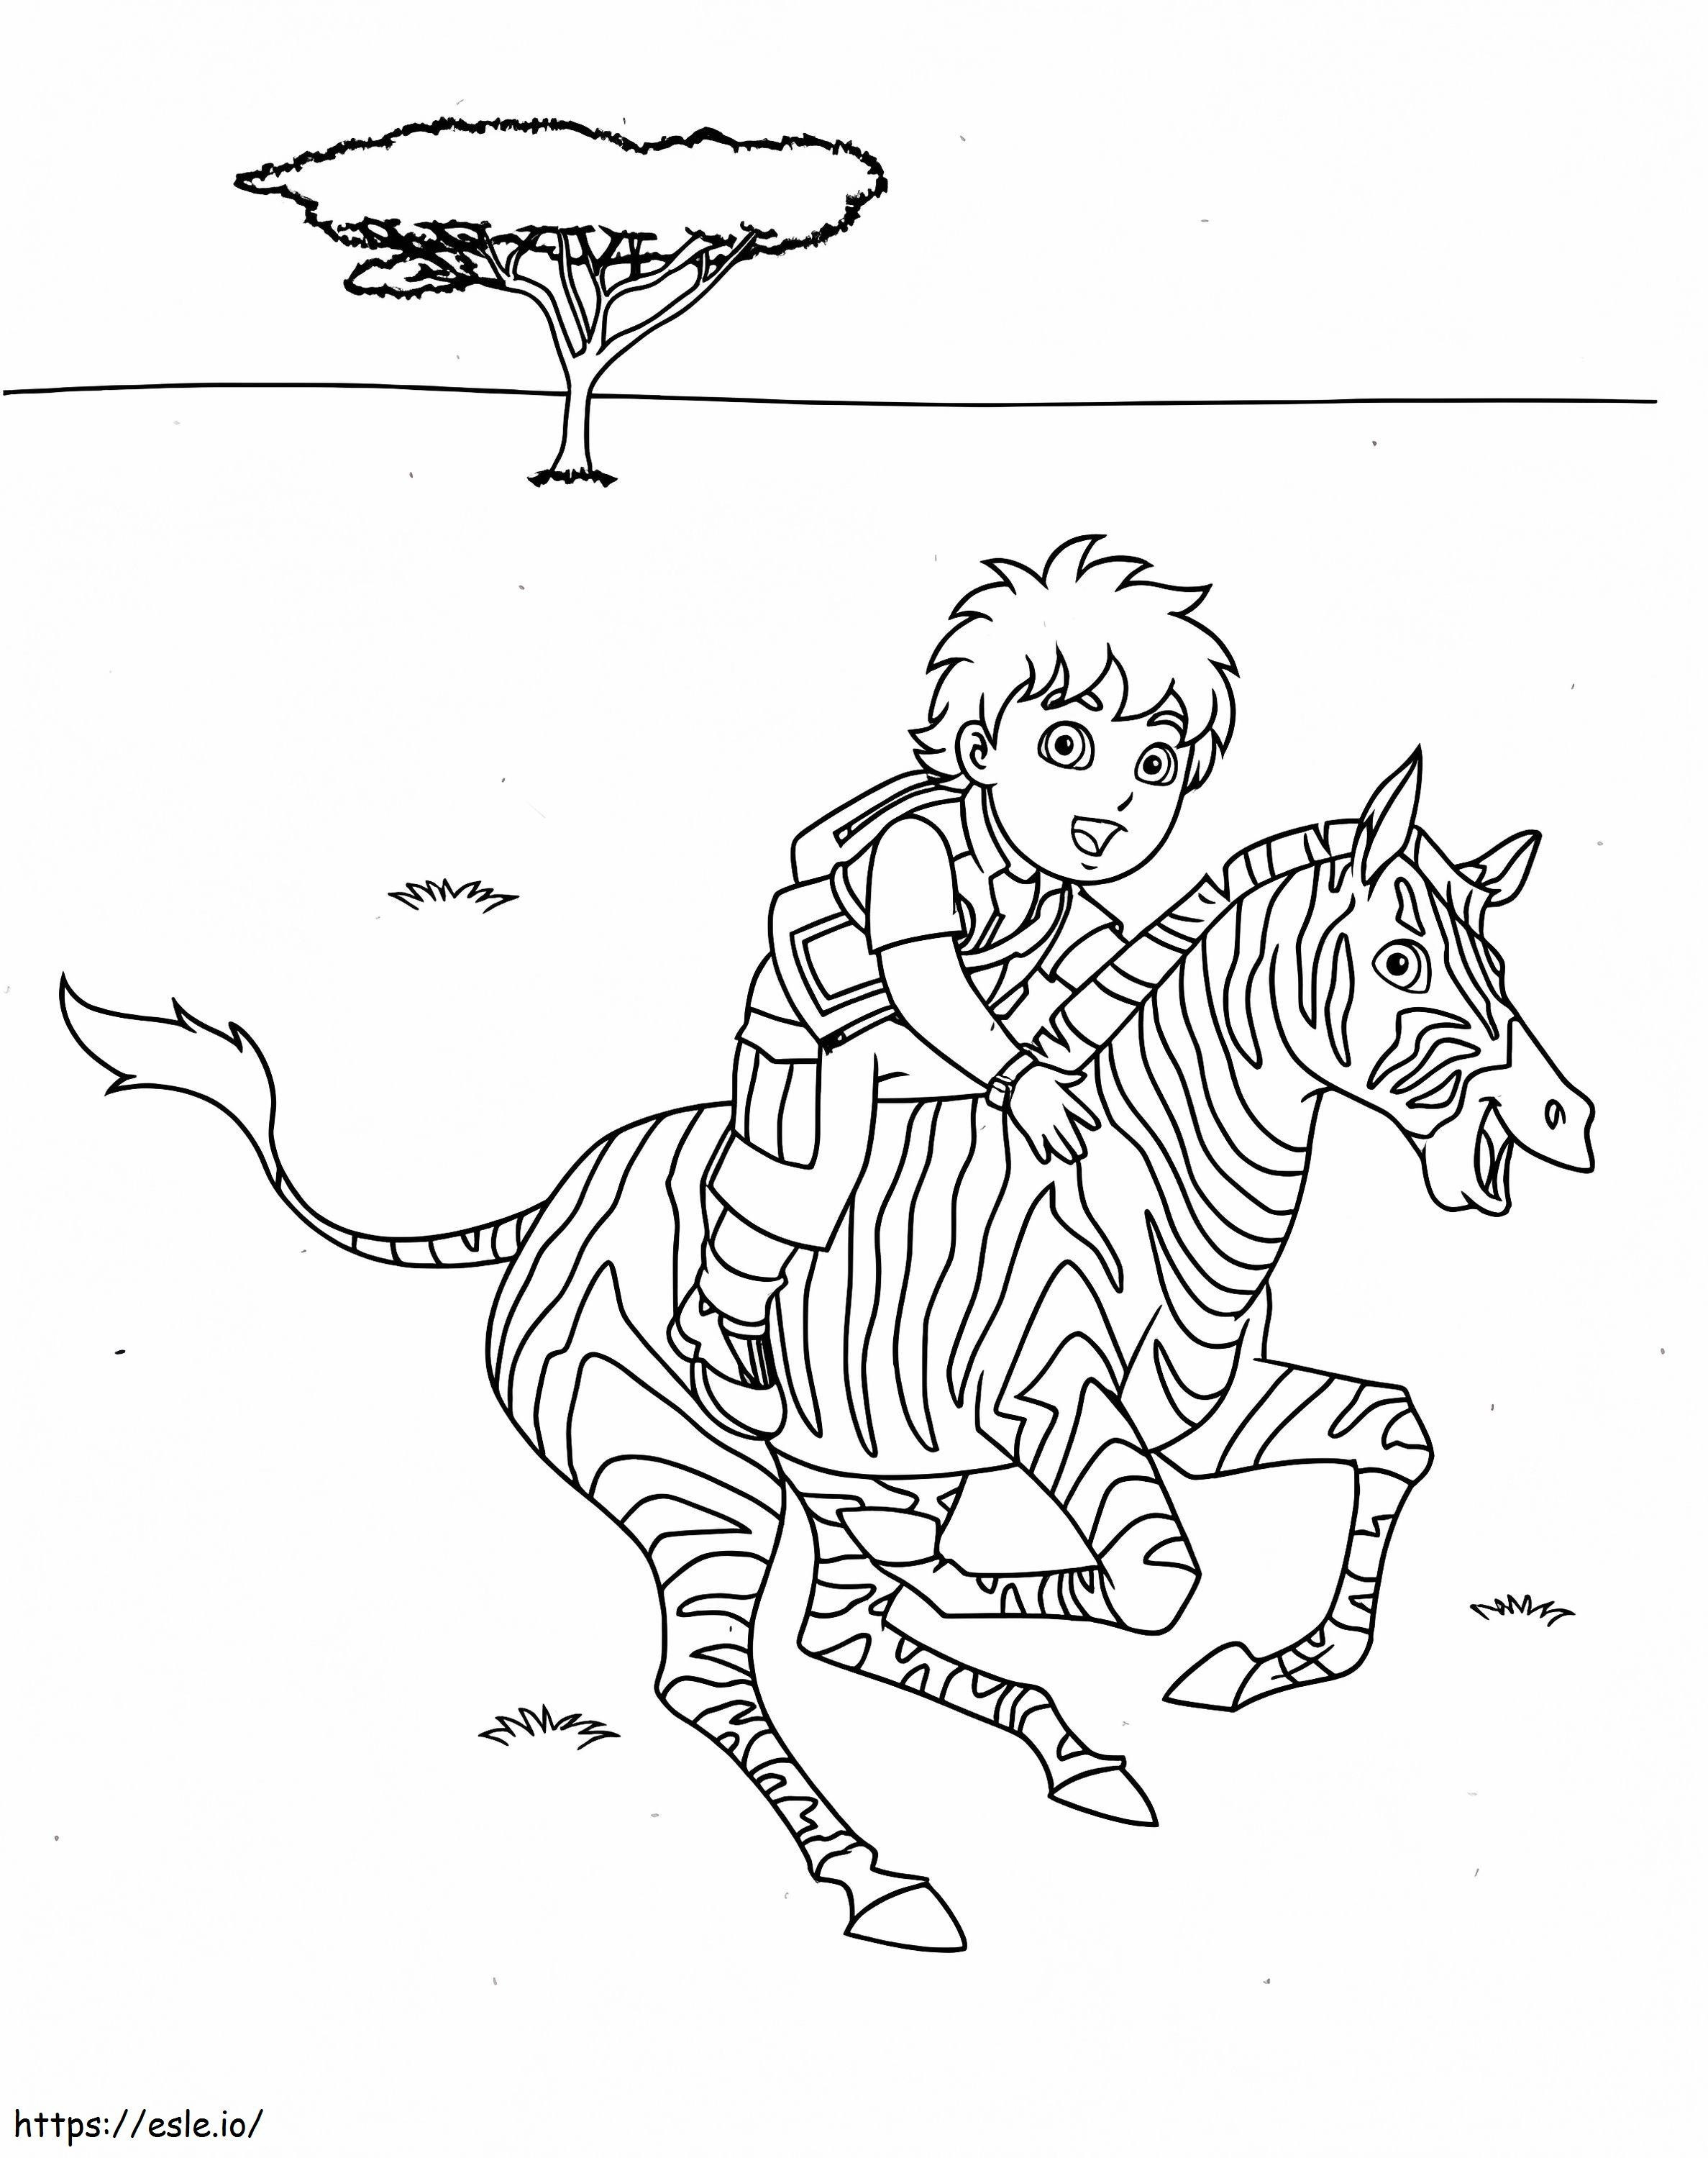 Diego reitet auf einem Zebra ausmalbilder